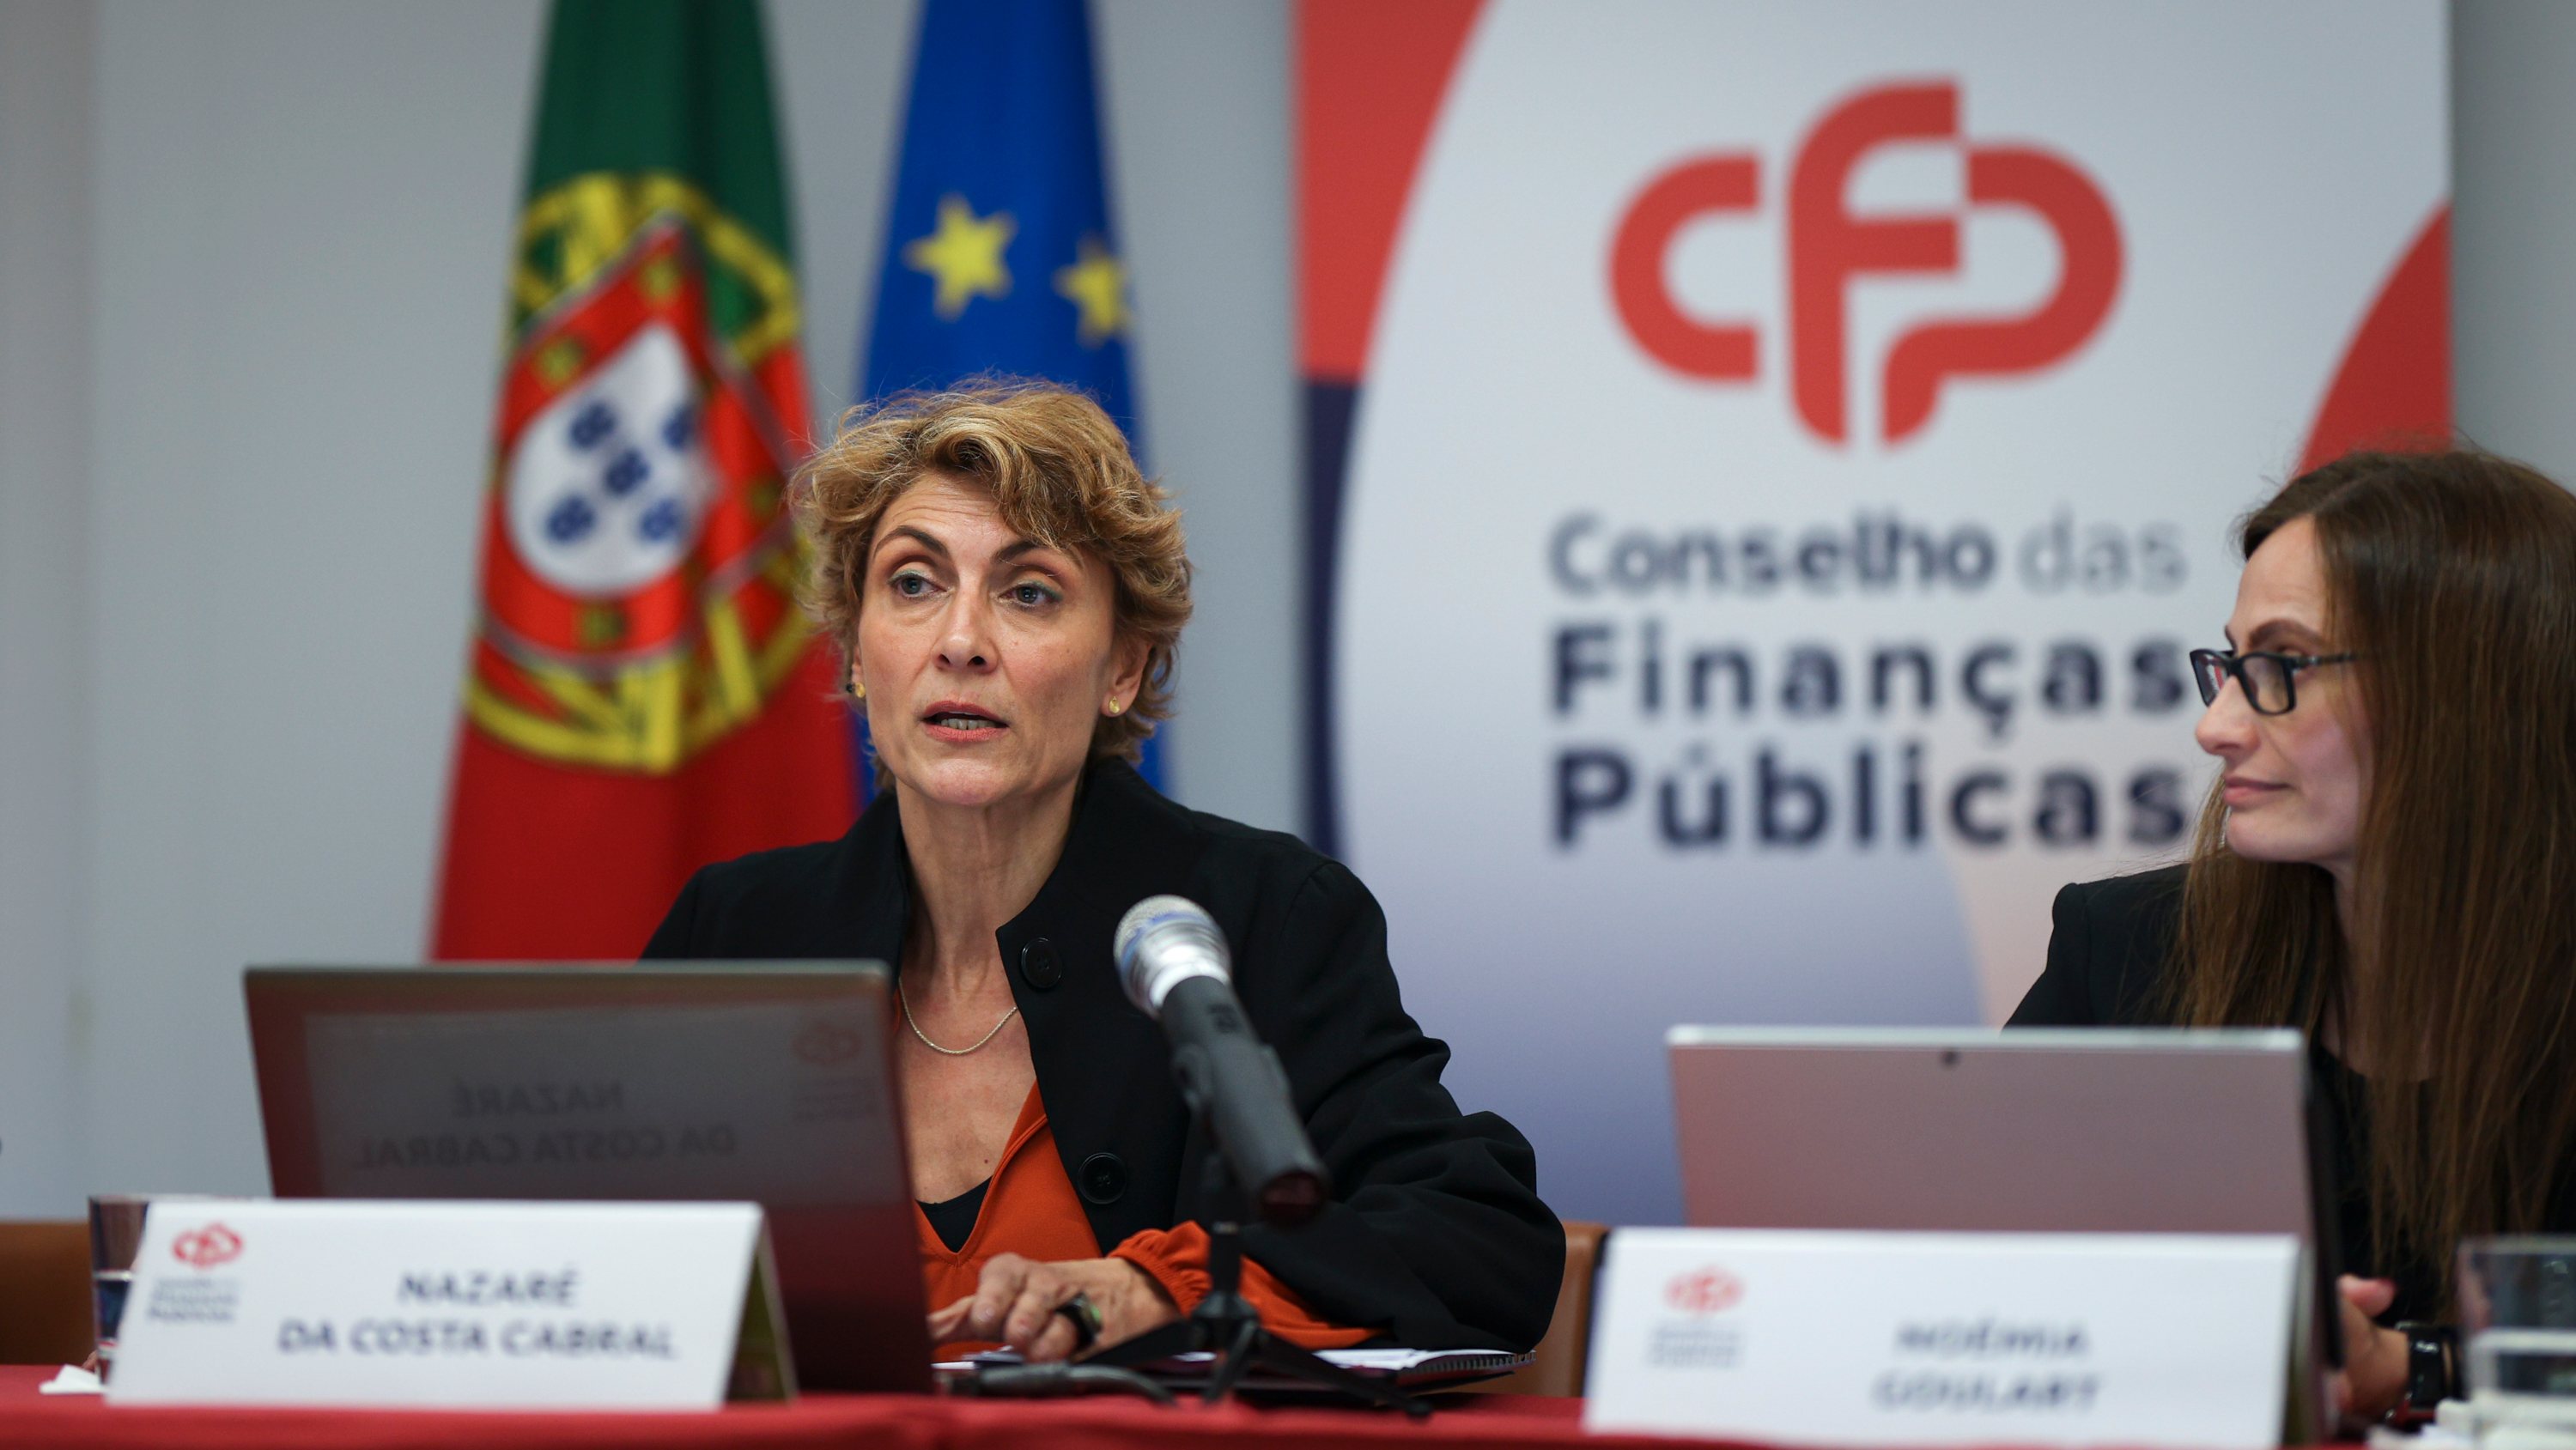 O CFP atualizou esta terça-feira as perspetivas macroeconómicas e orçamentais de Portugal para este ano e os próximos, mas não teve em conta os recentes desenvolvimentos no sistema bancário nos EUA e na Suíça